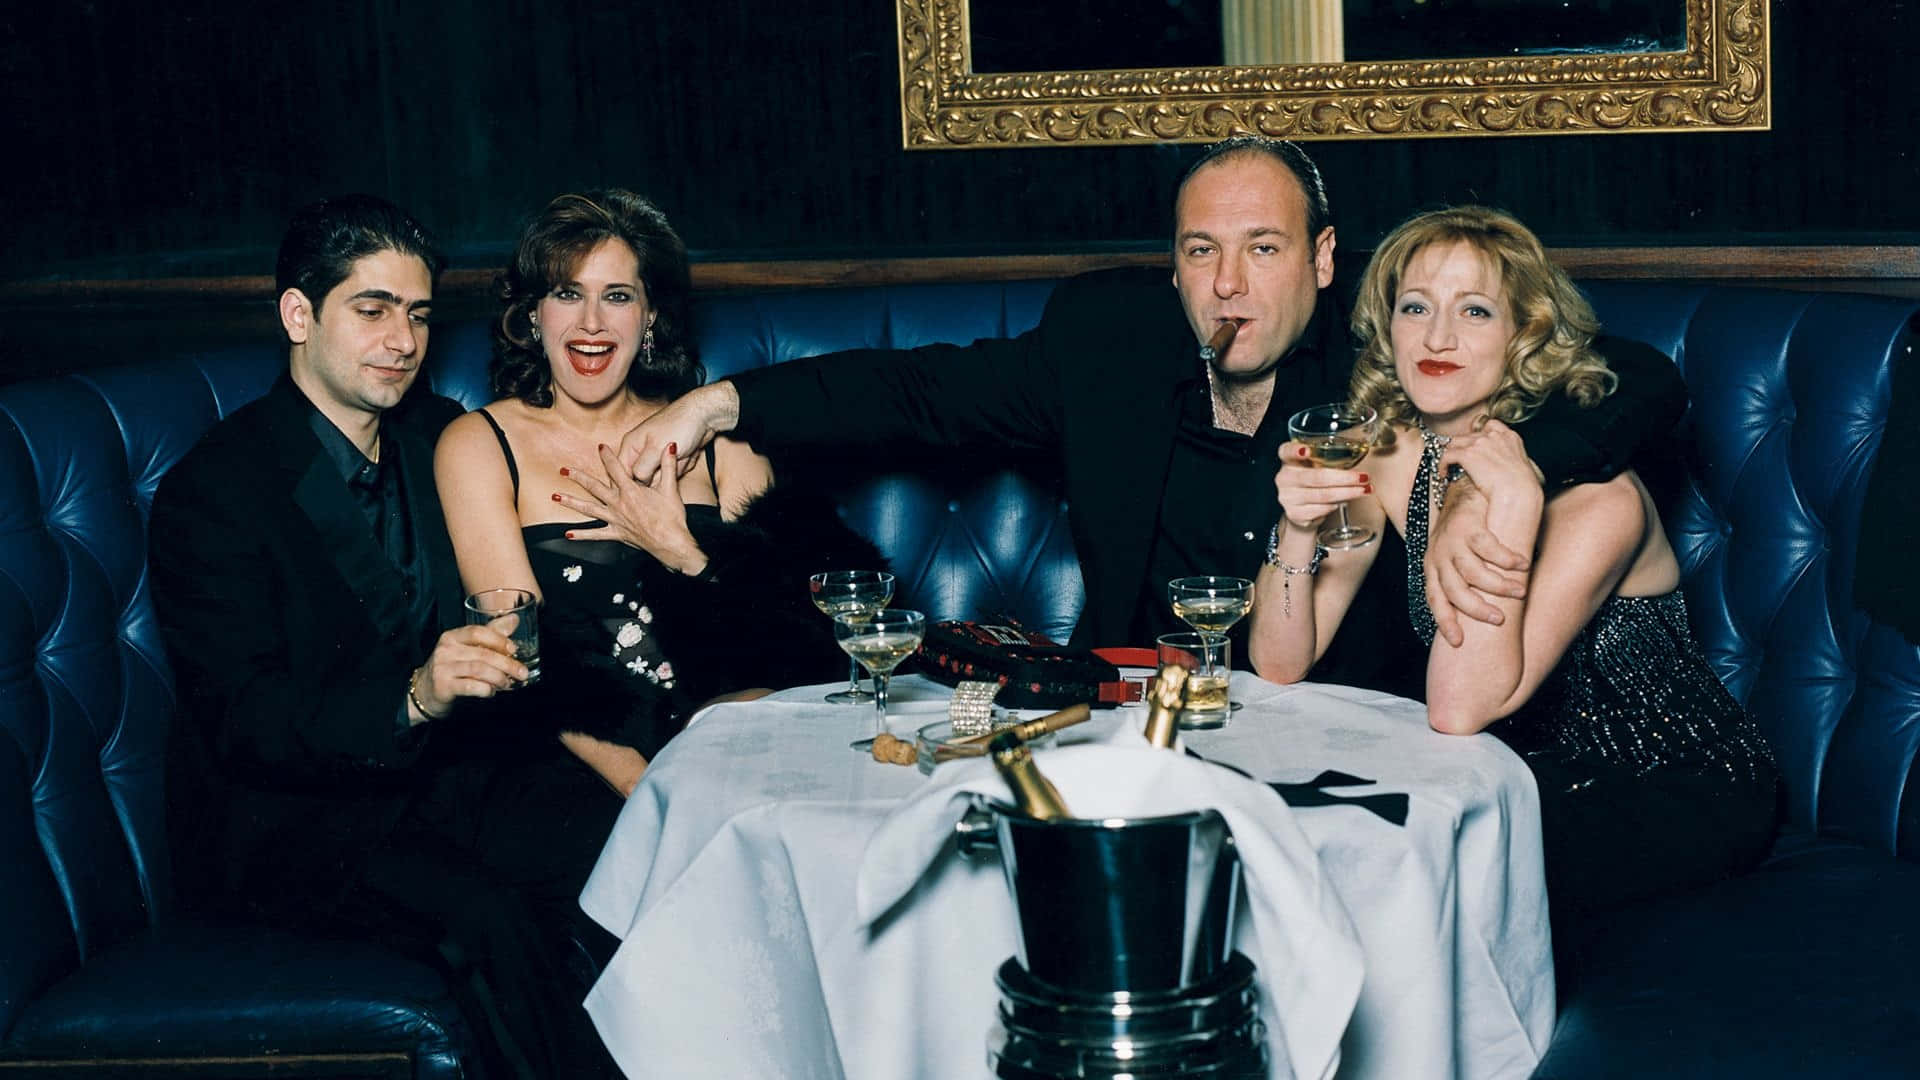 Derlegendäre Mafia-boss Tony Soprano, Gespielt Von James Gandolfini, In Die Sopranos. Wallpaper